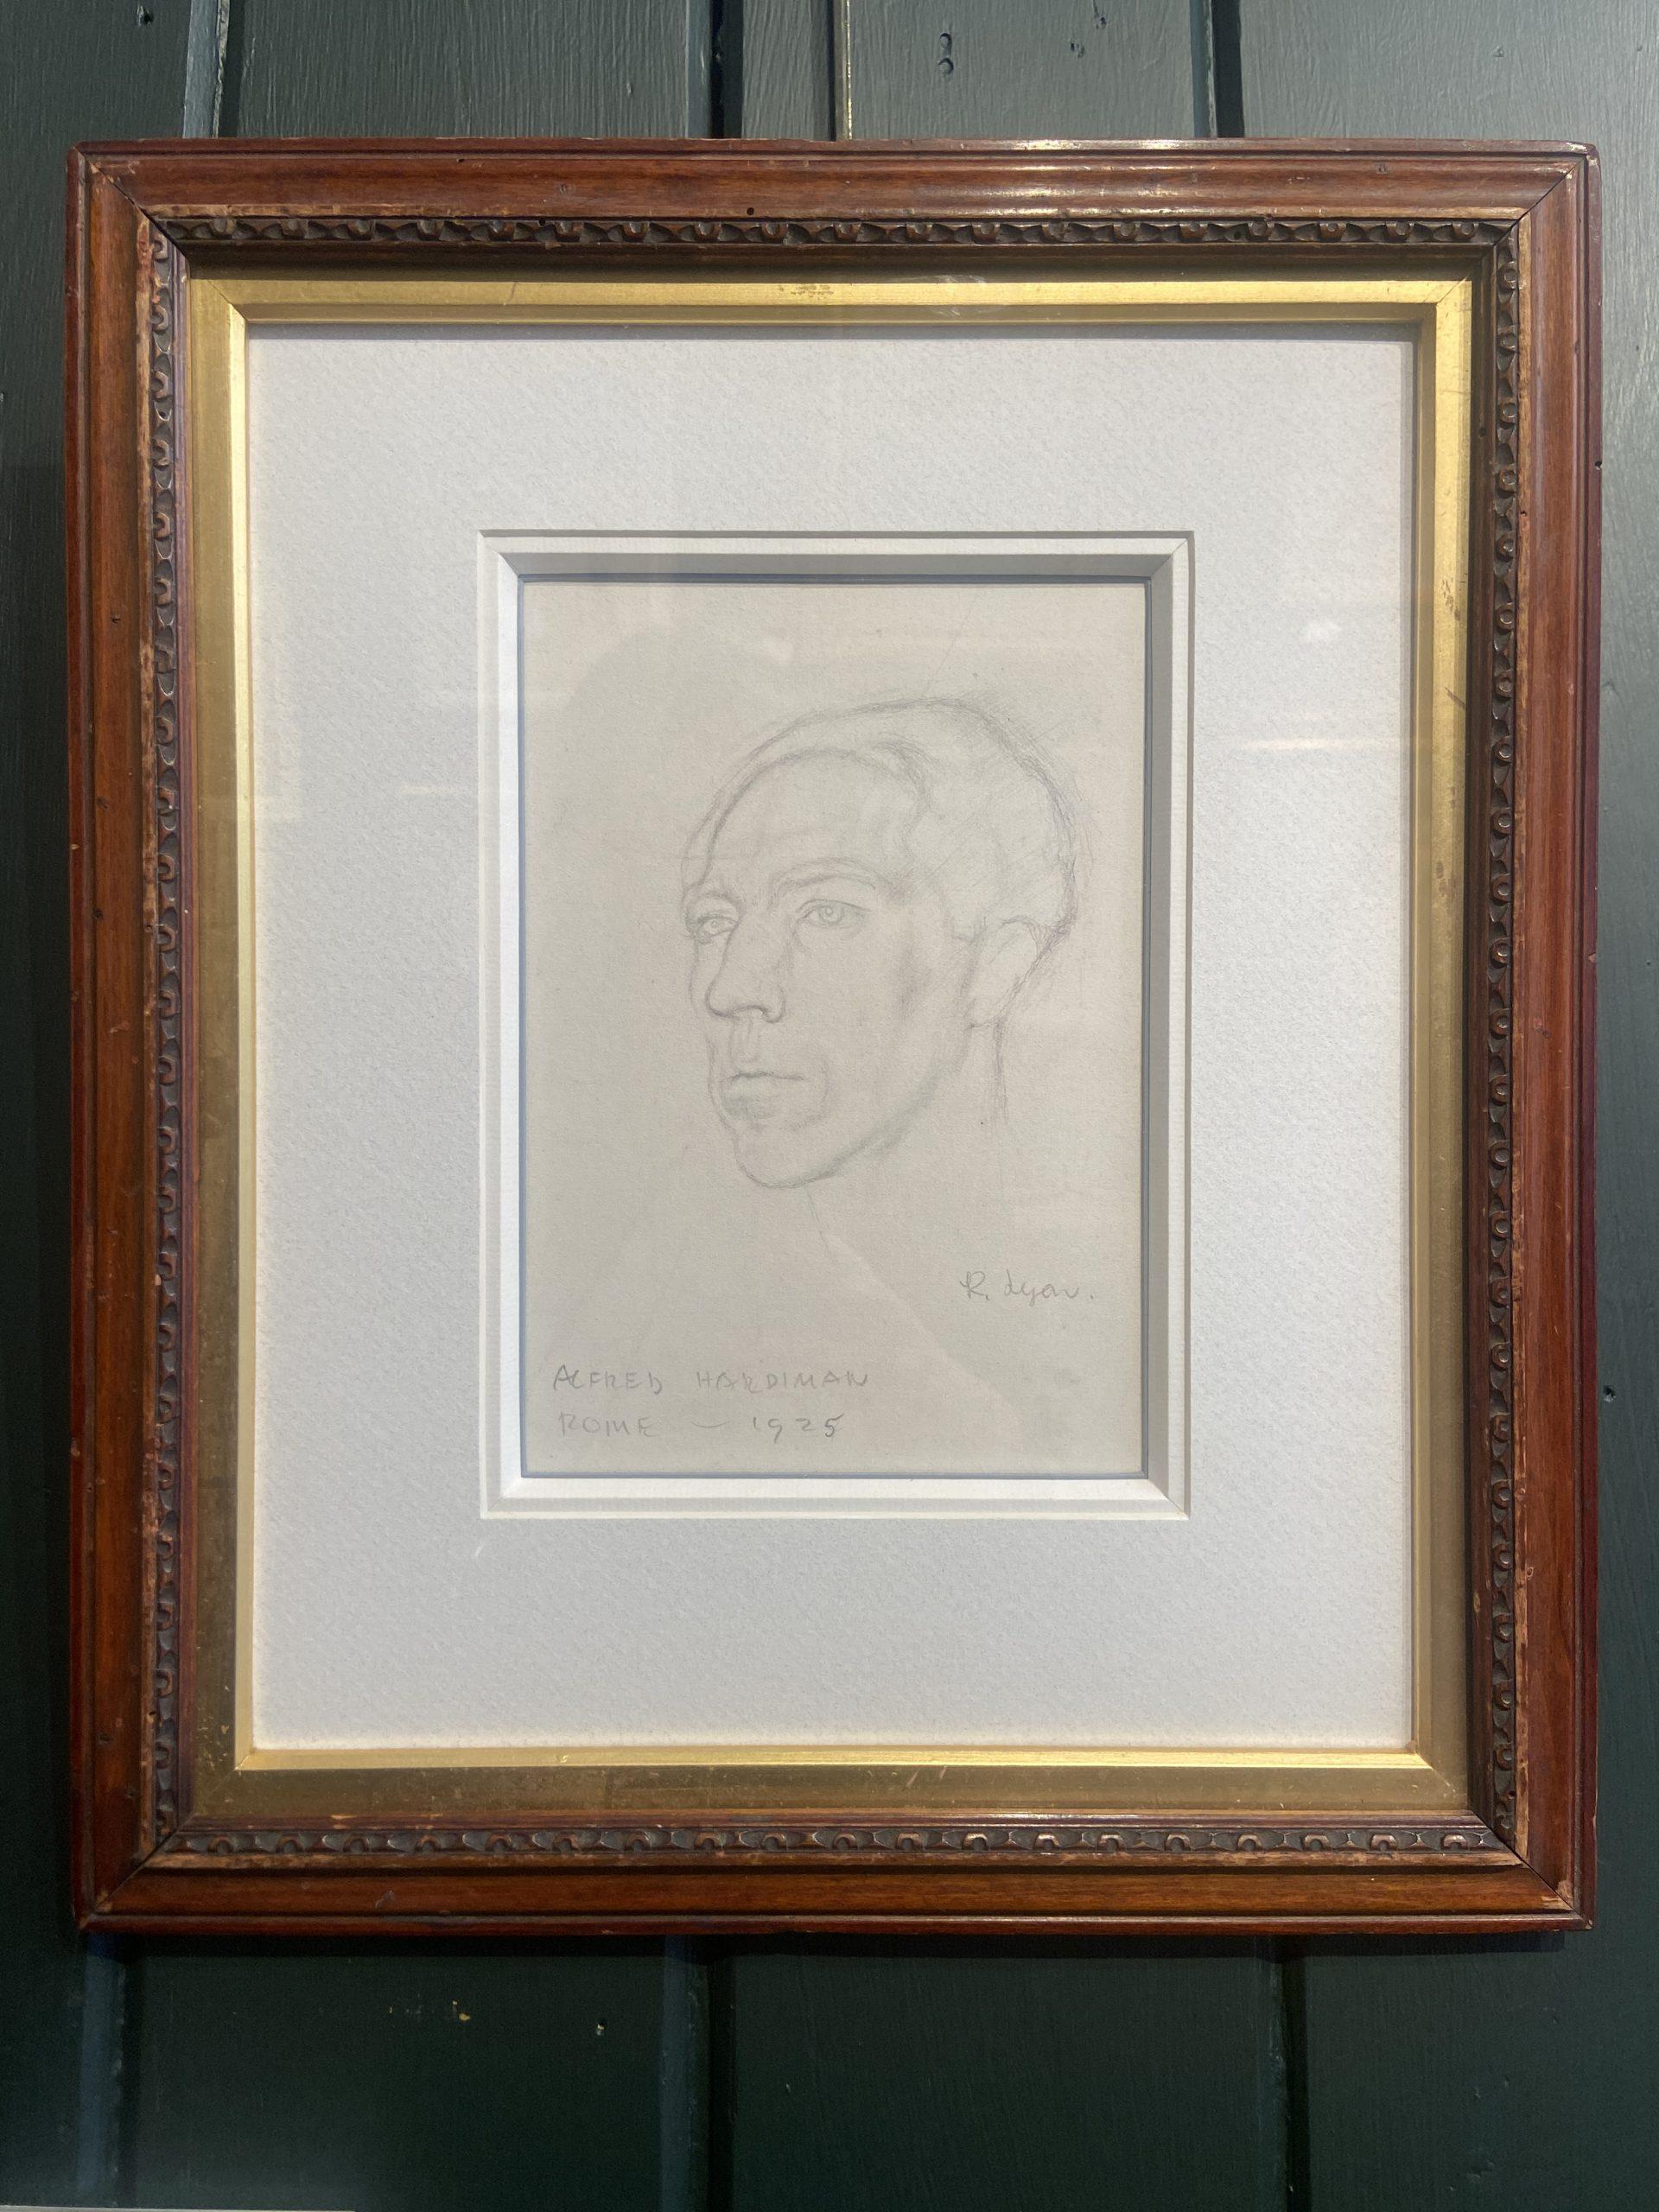 Porträt von Alfred Hardiman, Graphitskizze, signiert und datiert 1925 – Art von Robert Lyon